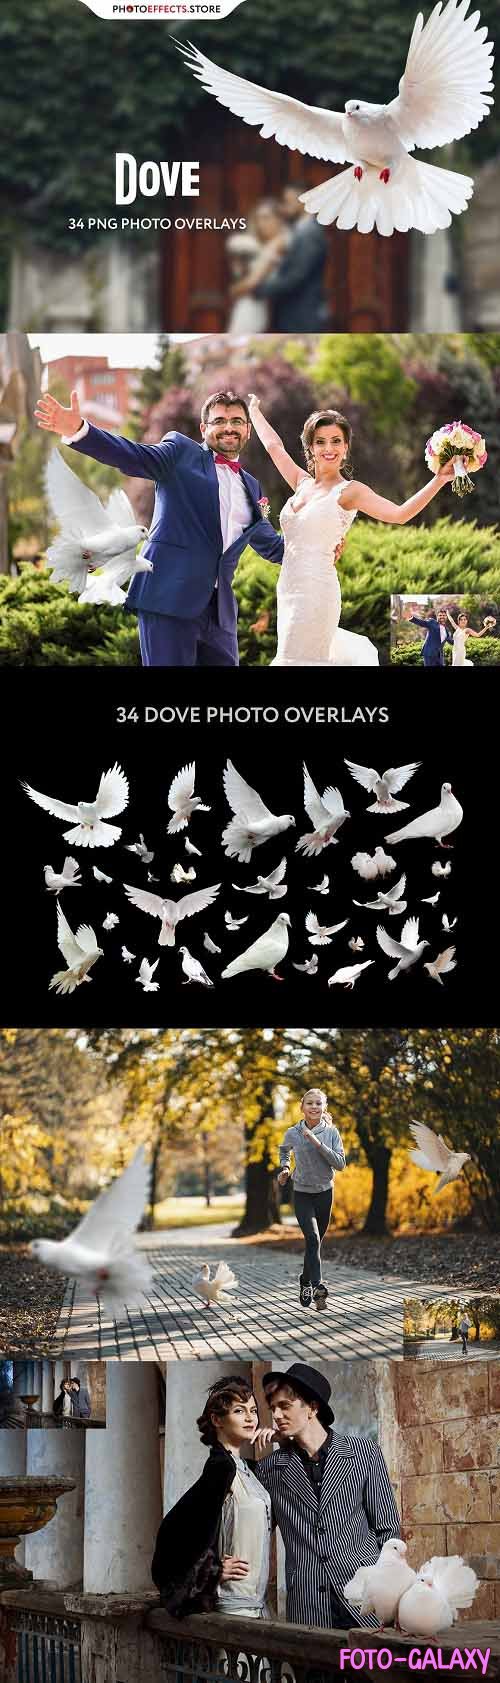 34 Dove Photo Overlays - 6616340